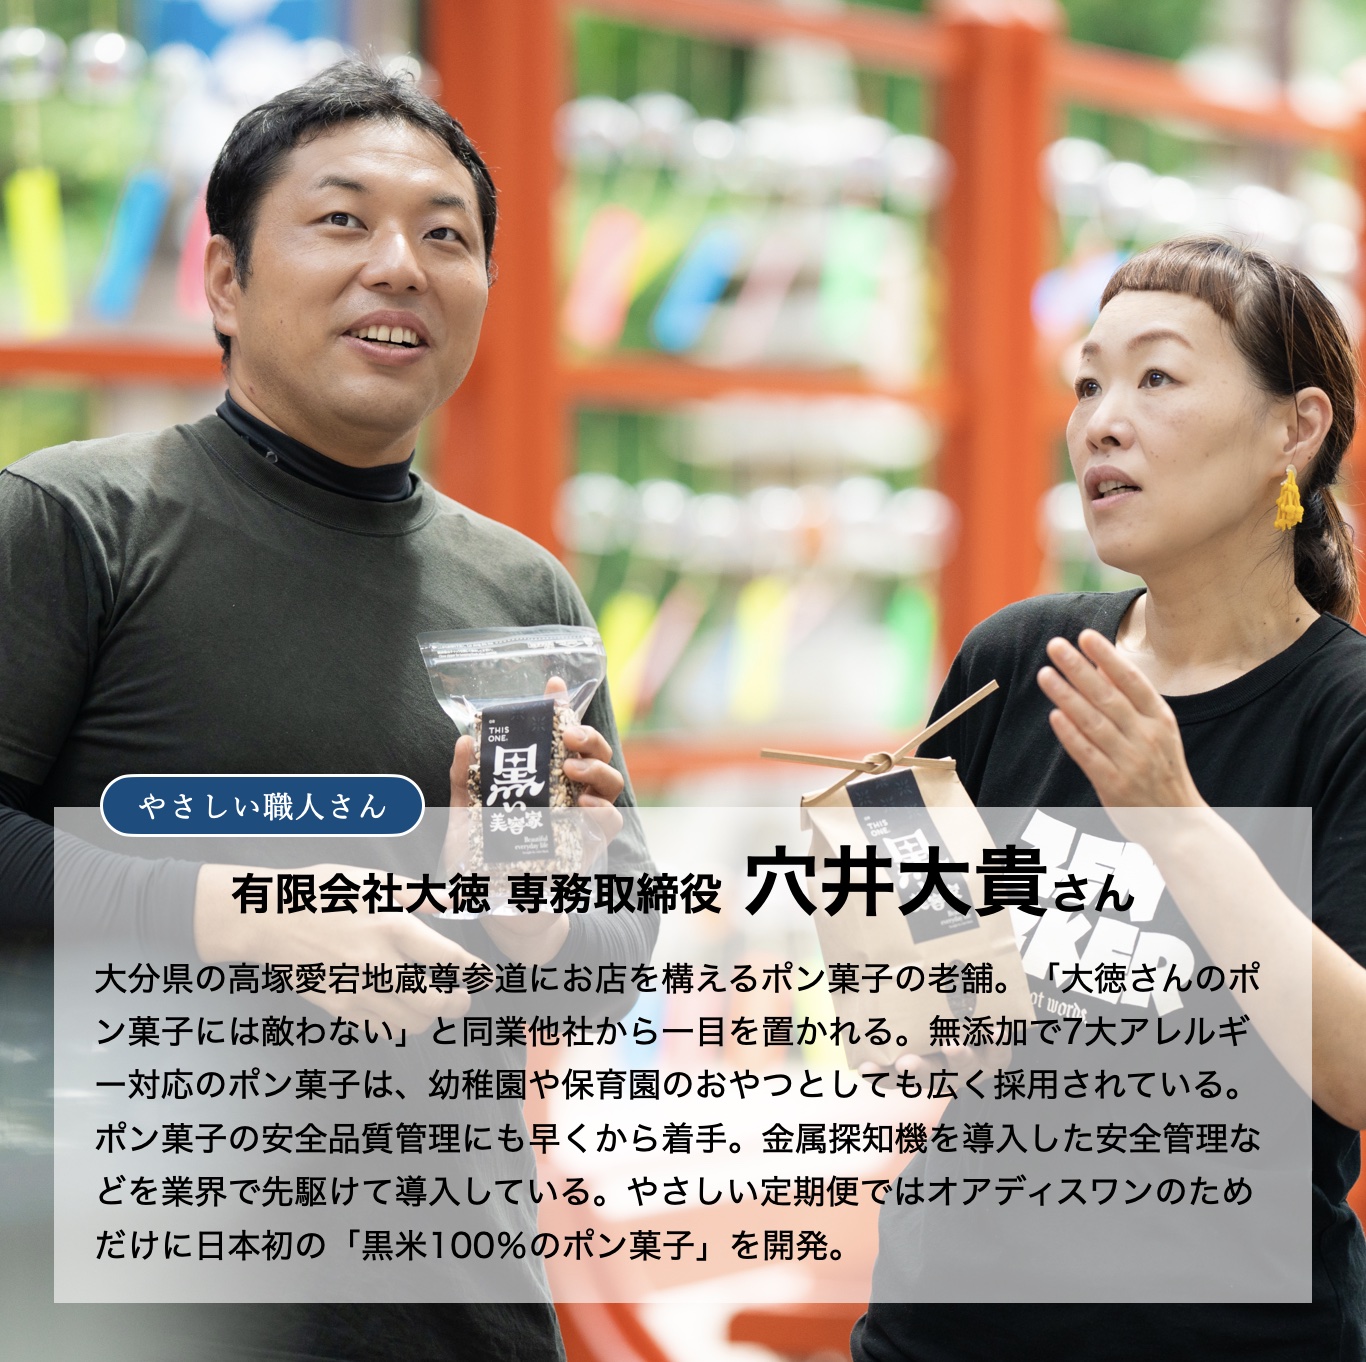 無添加で7大アレルギー対応のポン菓子をつくる大分の老舗ポン菓子メーカー大徳さんのイメージ